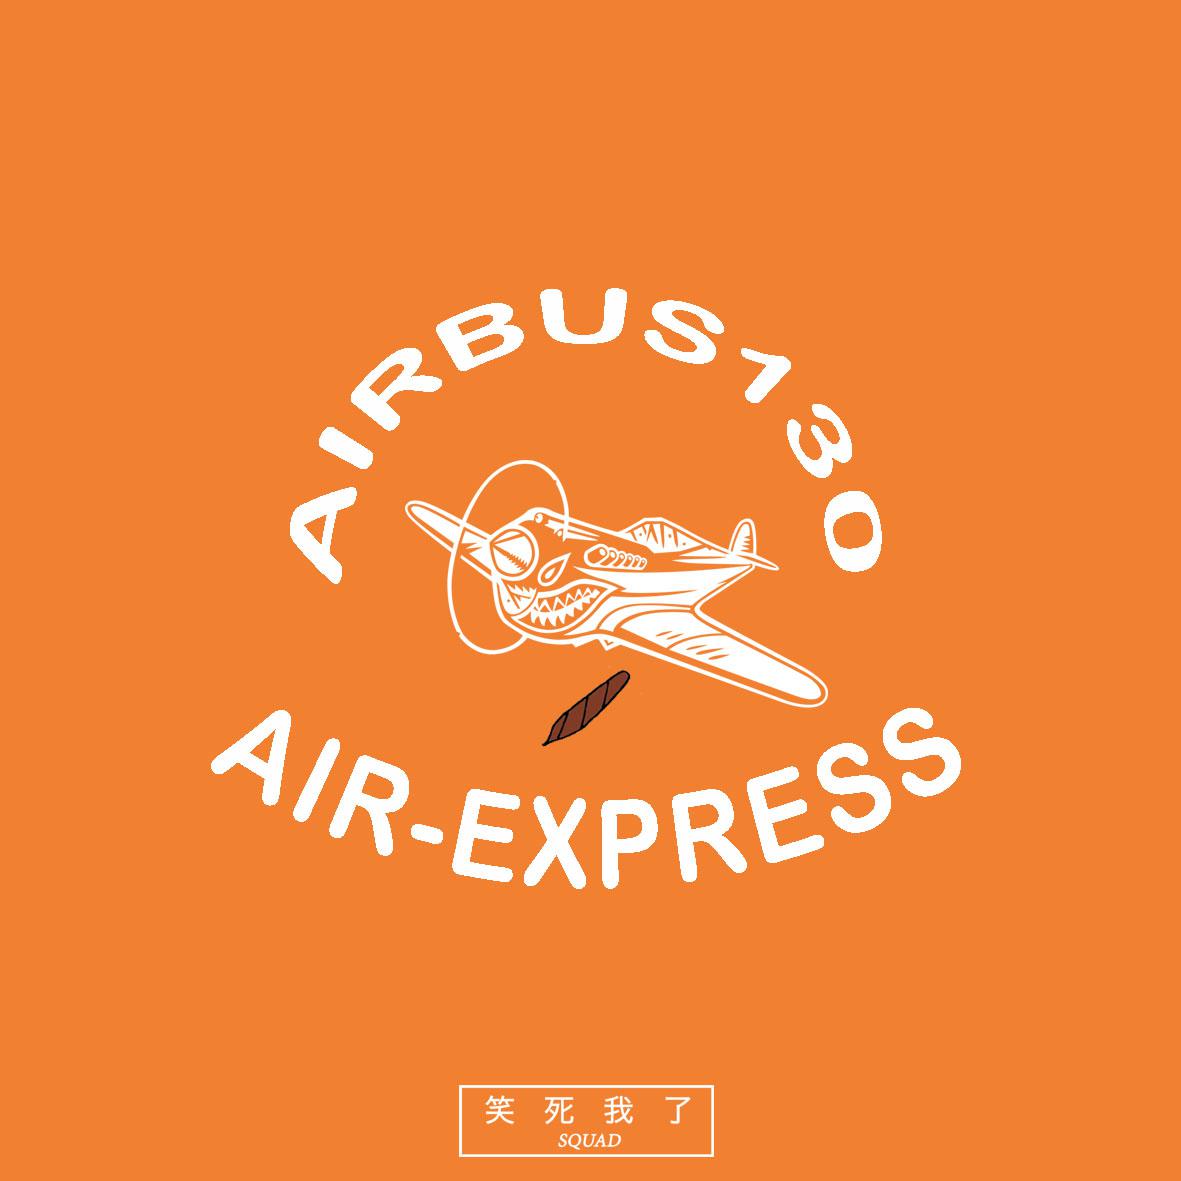 梁笑生AIRBUS130 - €rimson Clouds （Prod. By AIRBUS130)